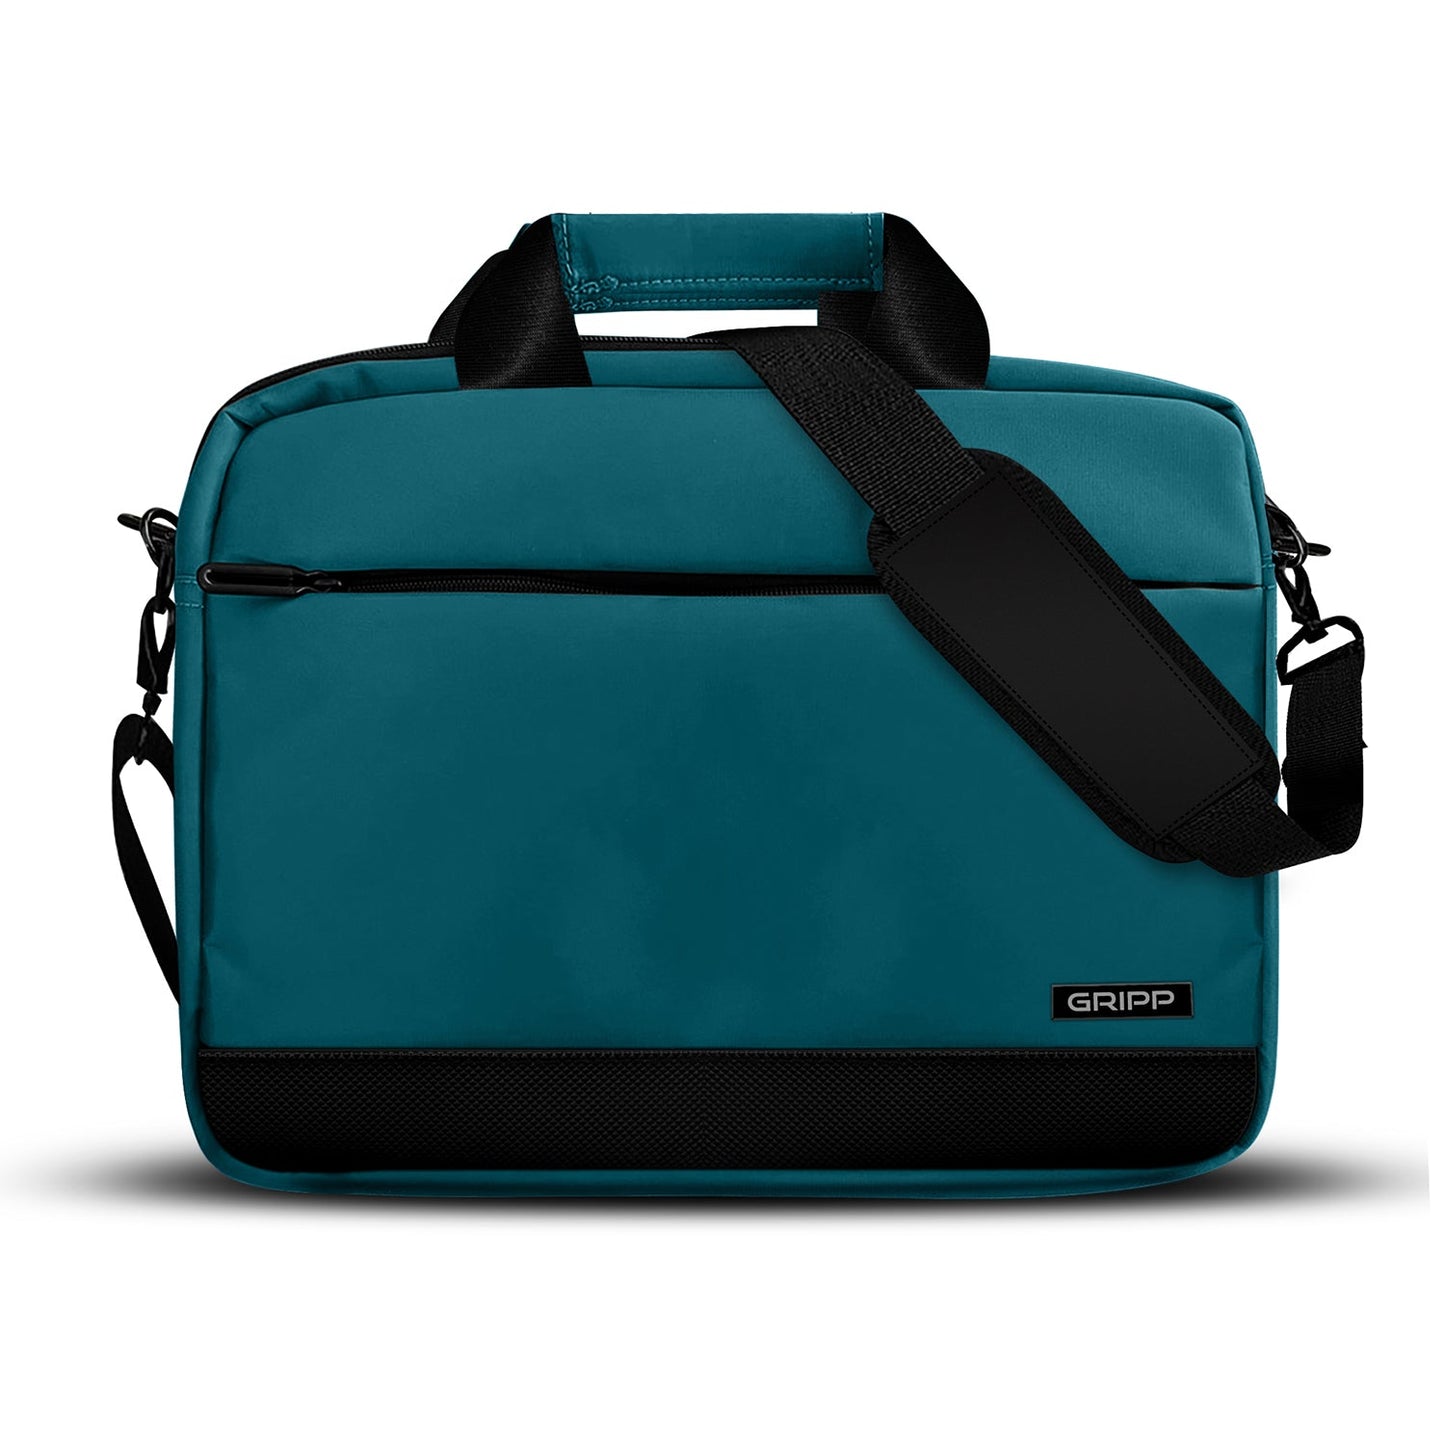 Gripp Bolt 13.3" Macbook /laptop Bag - Green